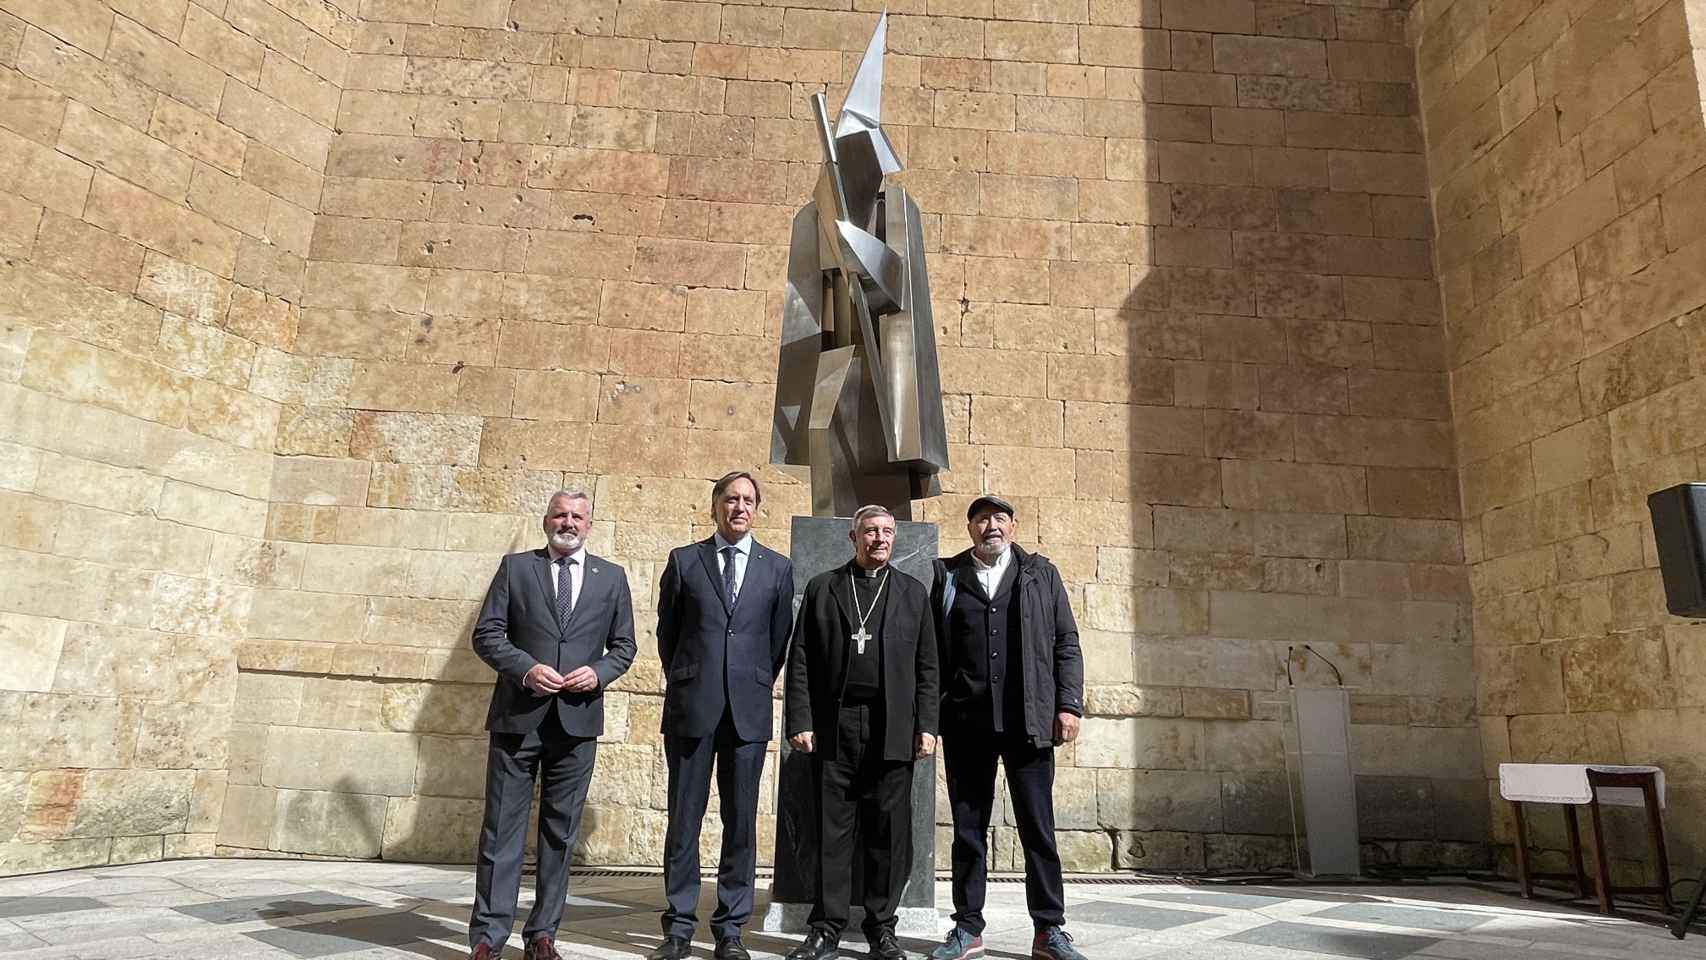 Inauguración de la estatua de la Semana Santa de Salamanca en la plaza de San Benito